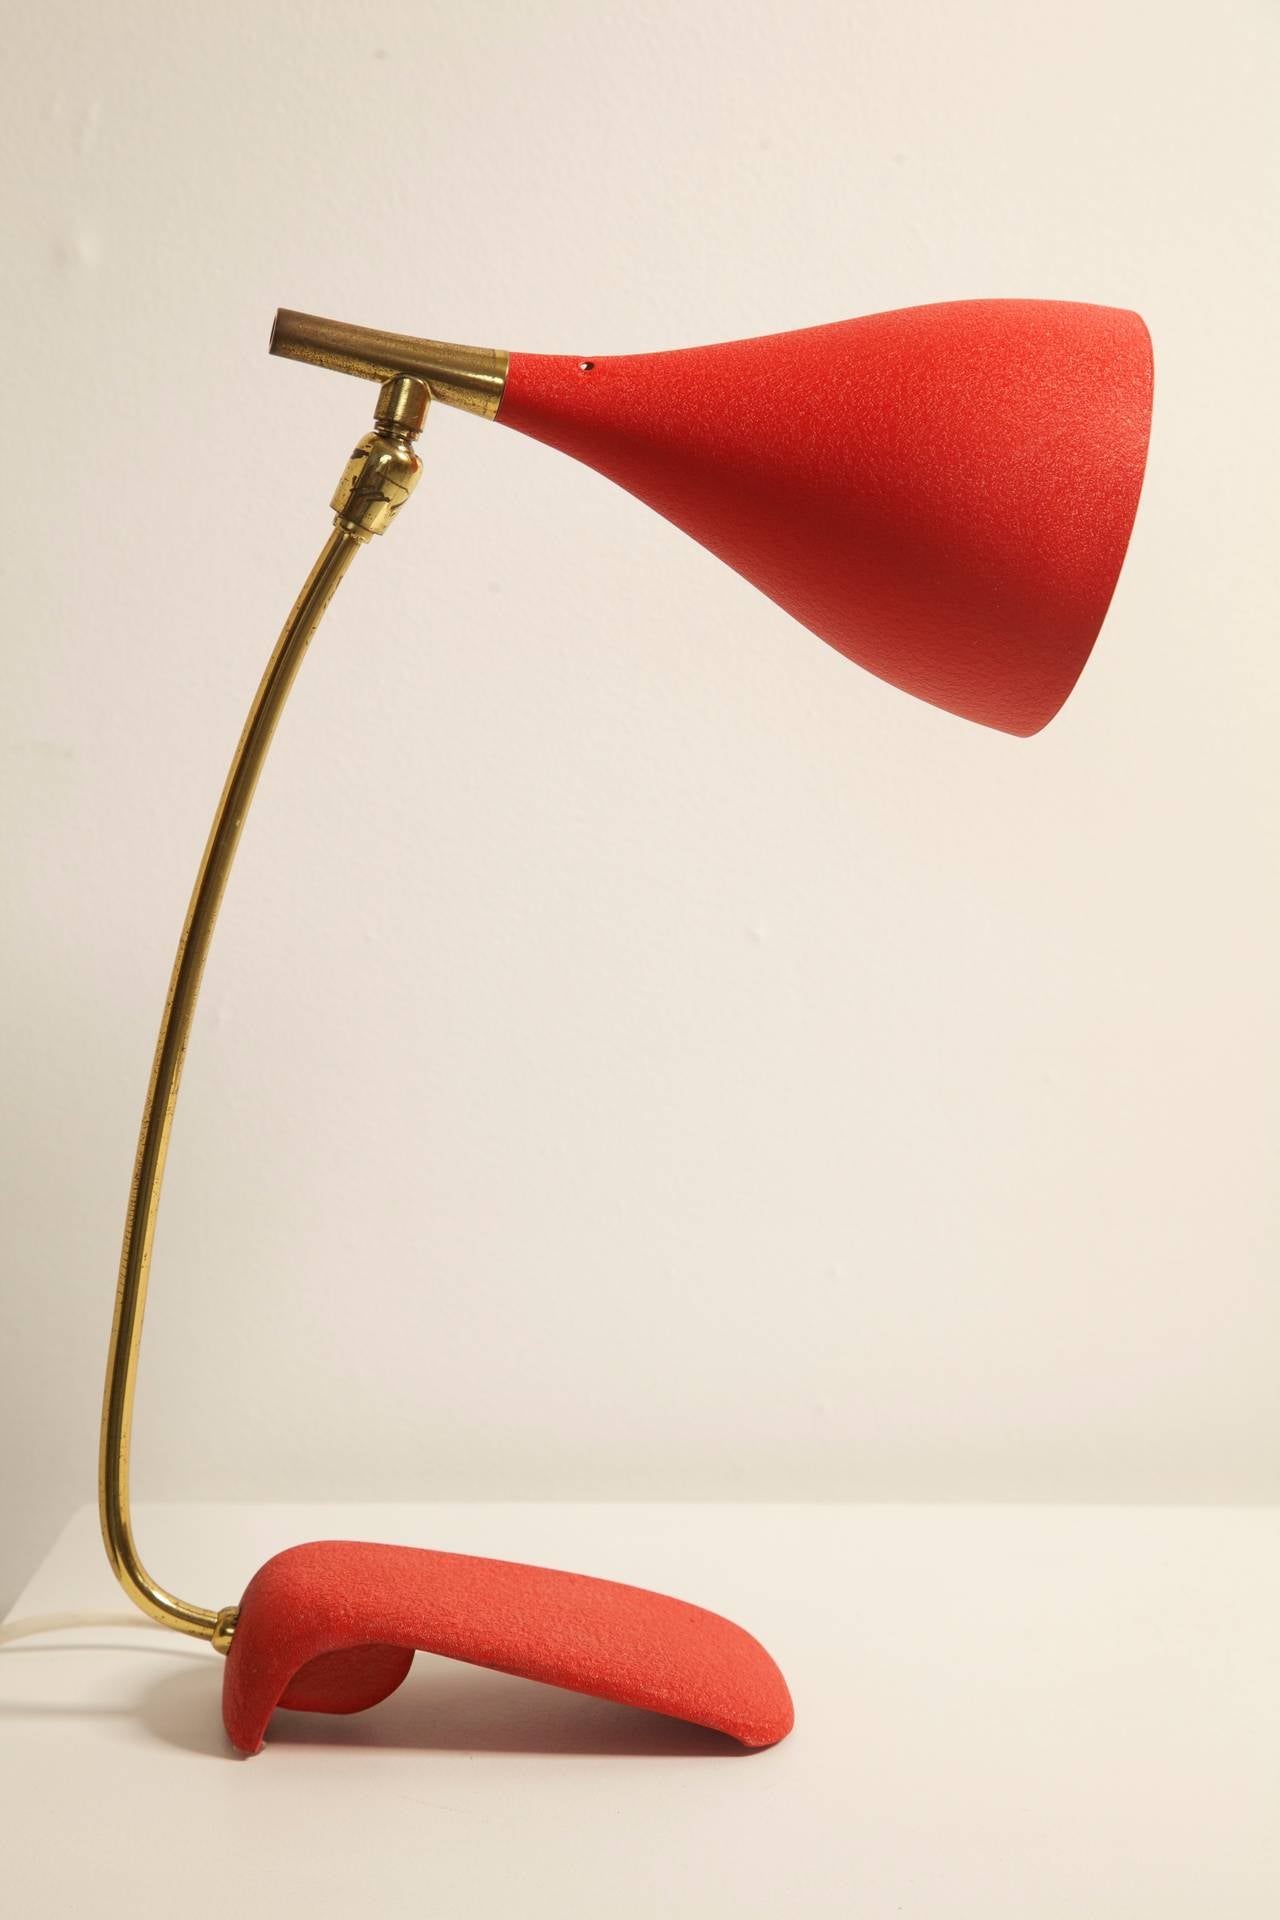 Mid-20th Century Red Italian Desk Lamp in the Manner of Stilnovo or Arredoluce